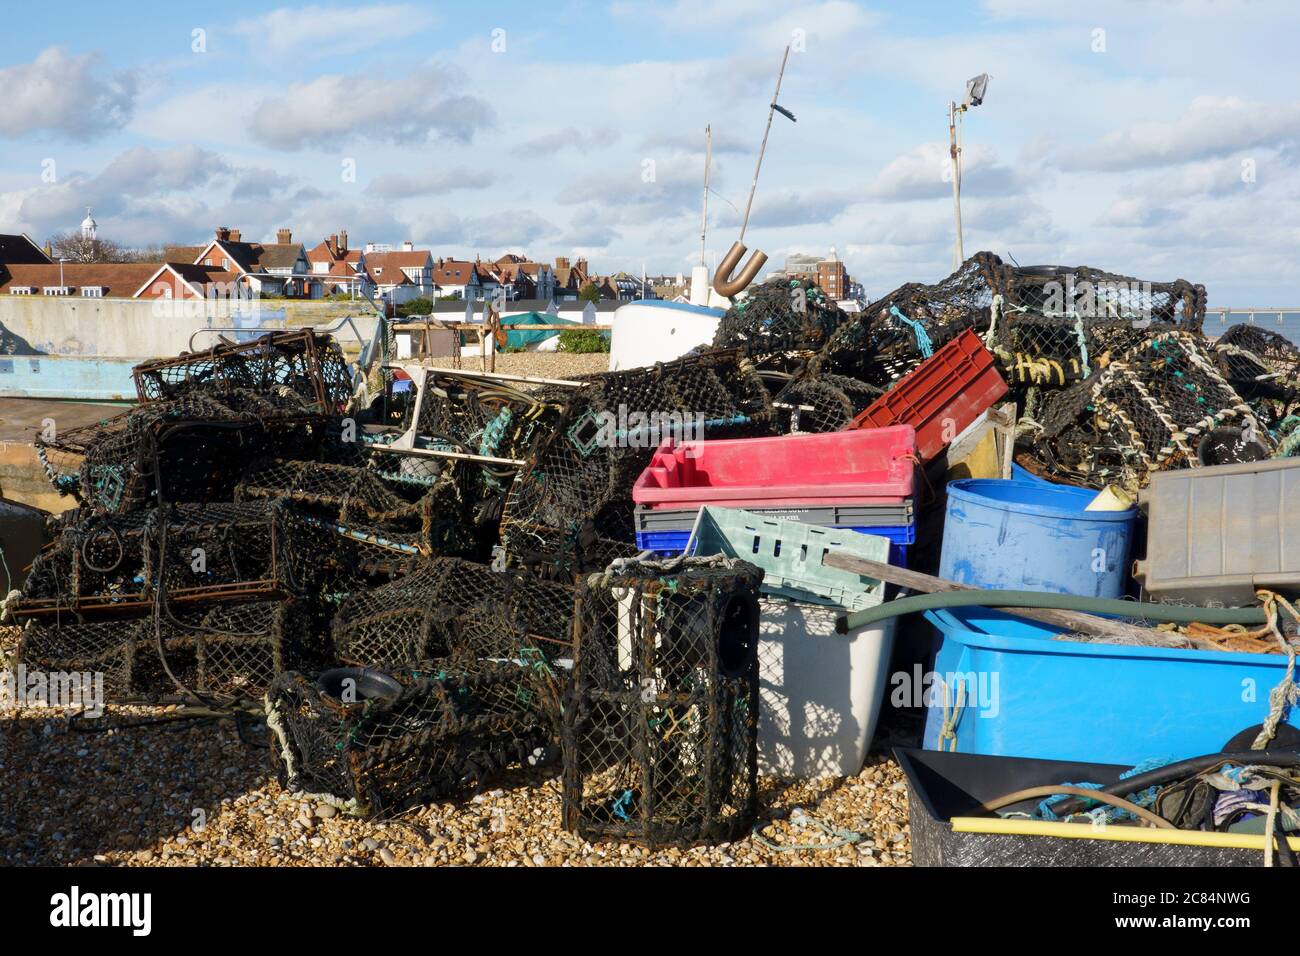 Deal Beach, pentole aragoste, scatole di stoccaggio, attrezzatura da pesca, Deal, Kent, Inghilterra Foto Stock